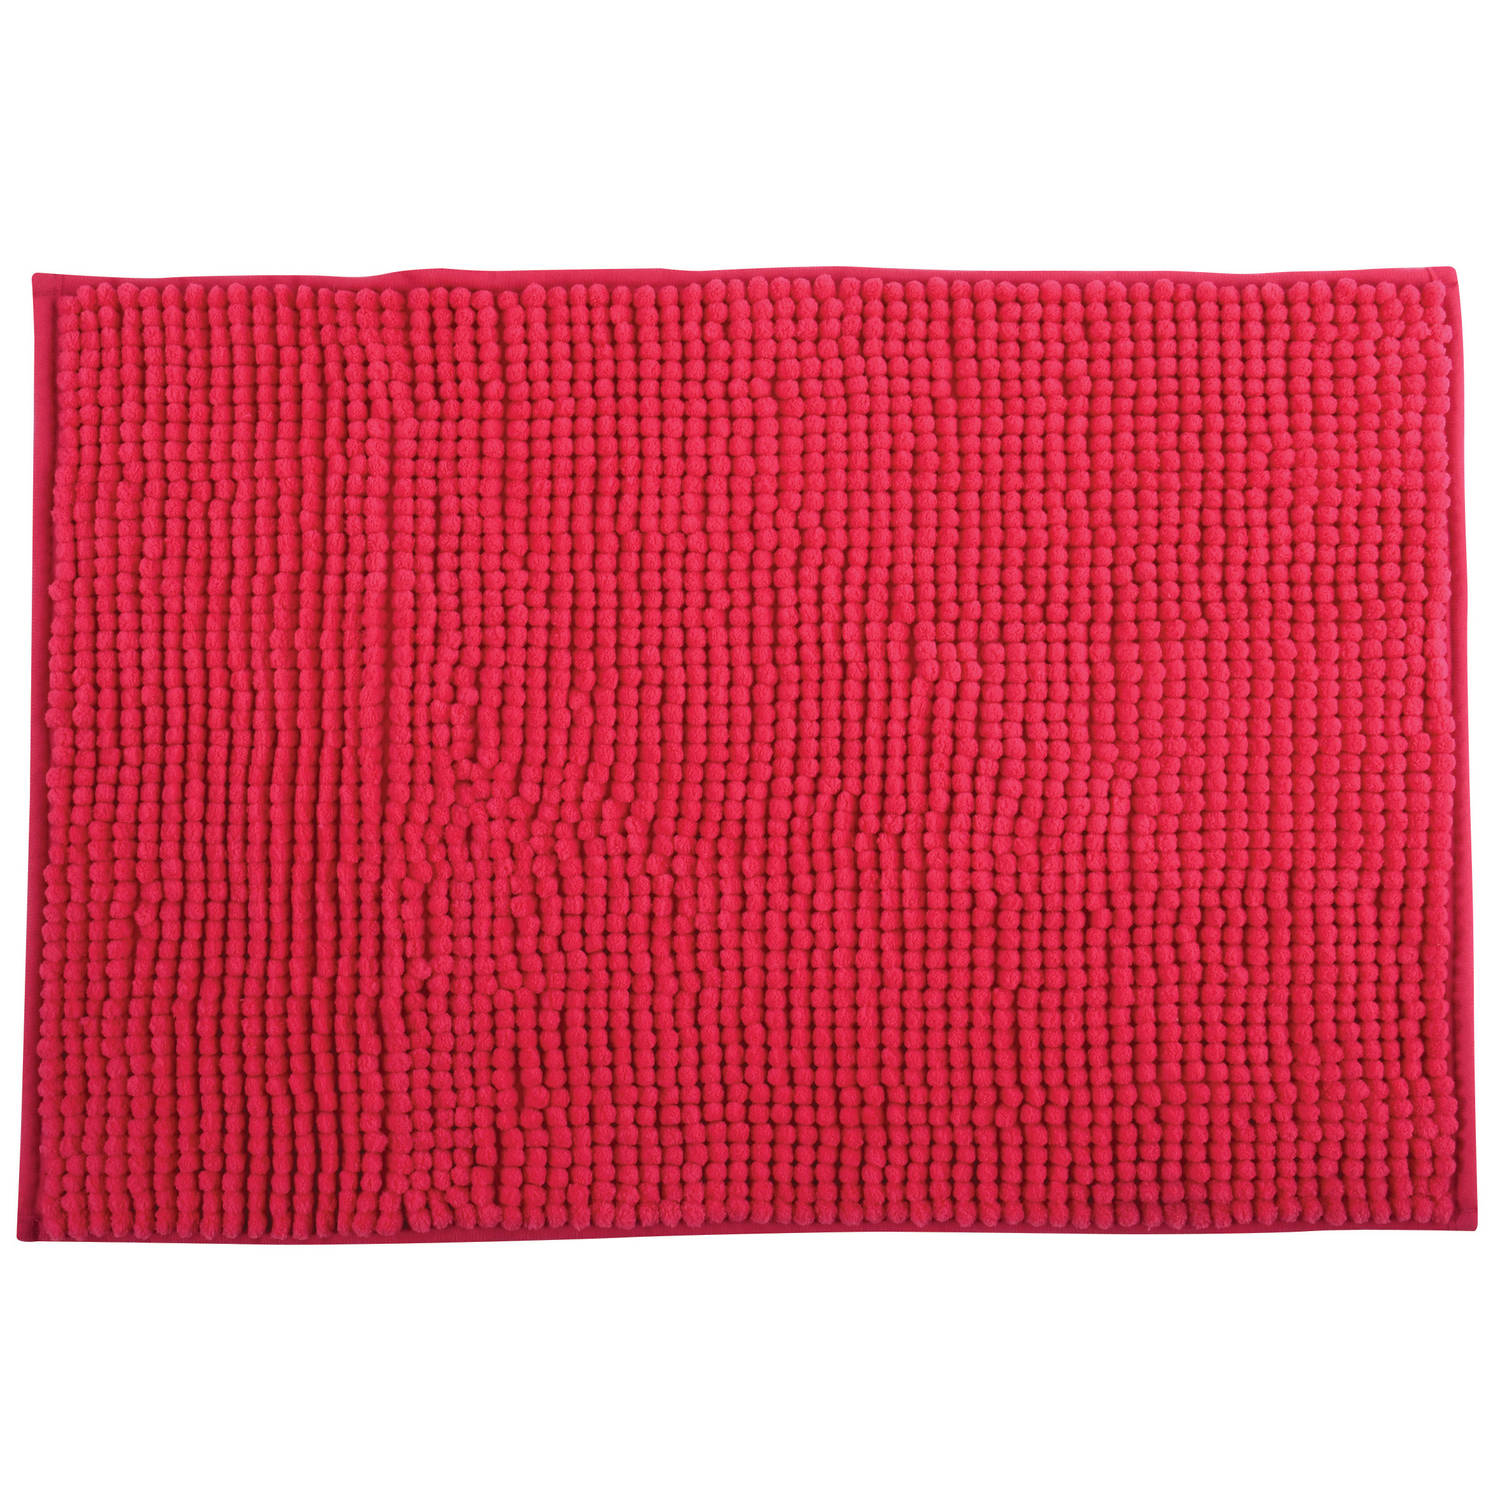 Msv Badkamerkleed-badmat Voor Op De Vloer Fuchsia Roze 60 X 90 Cm